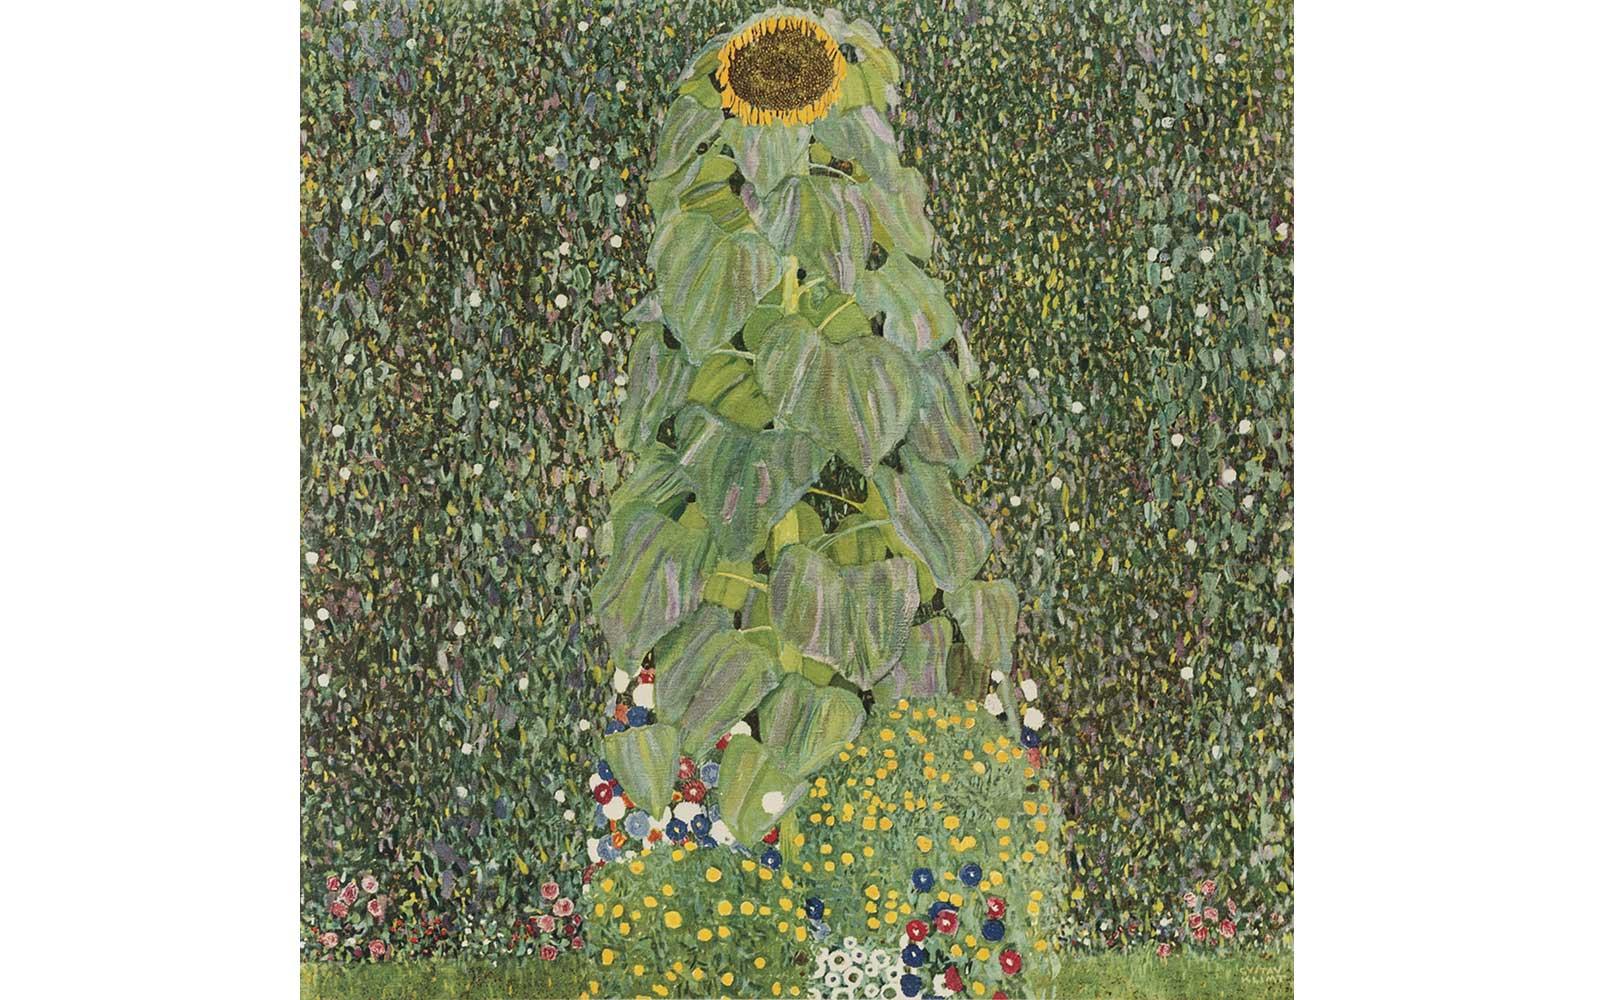 Gustav Klimt, Reproduction of Sunflower, 1907-08.